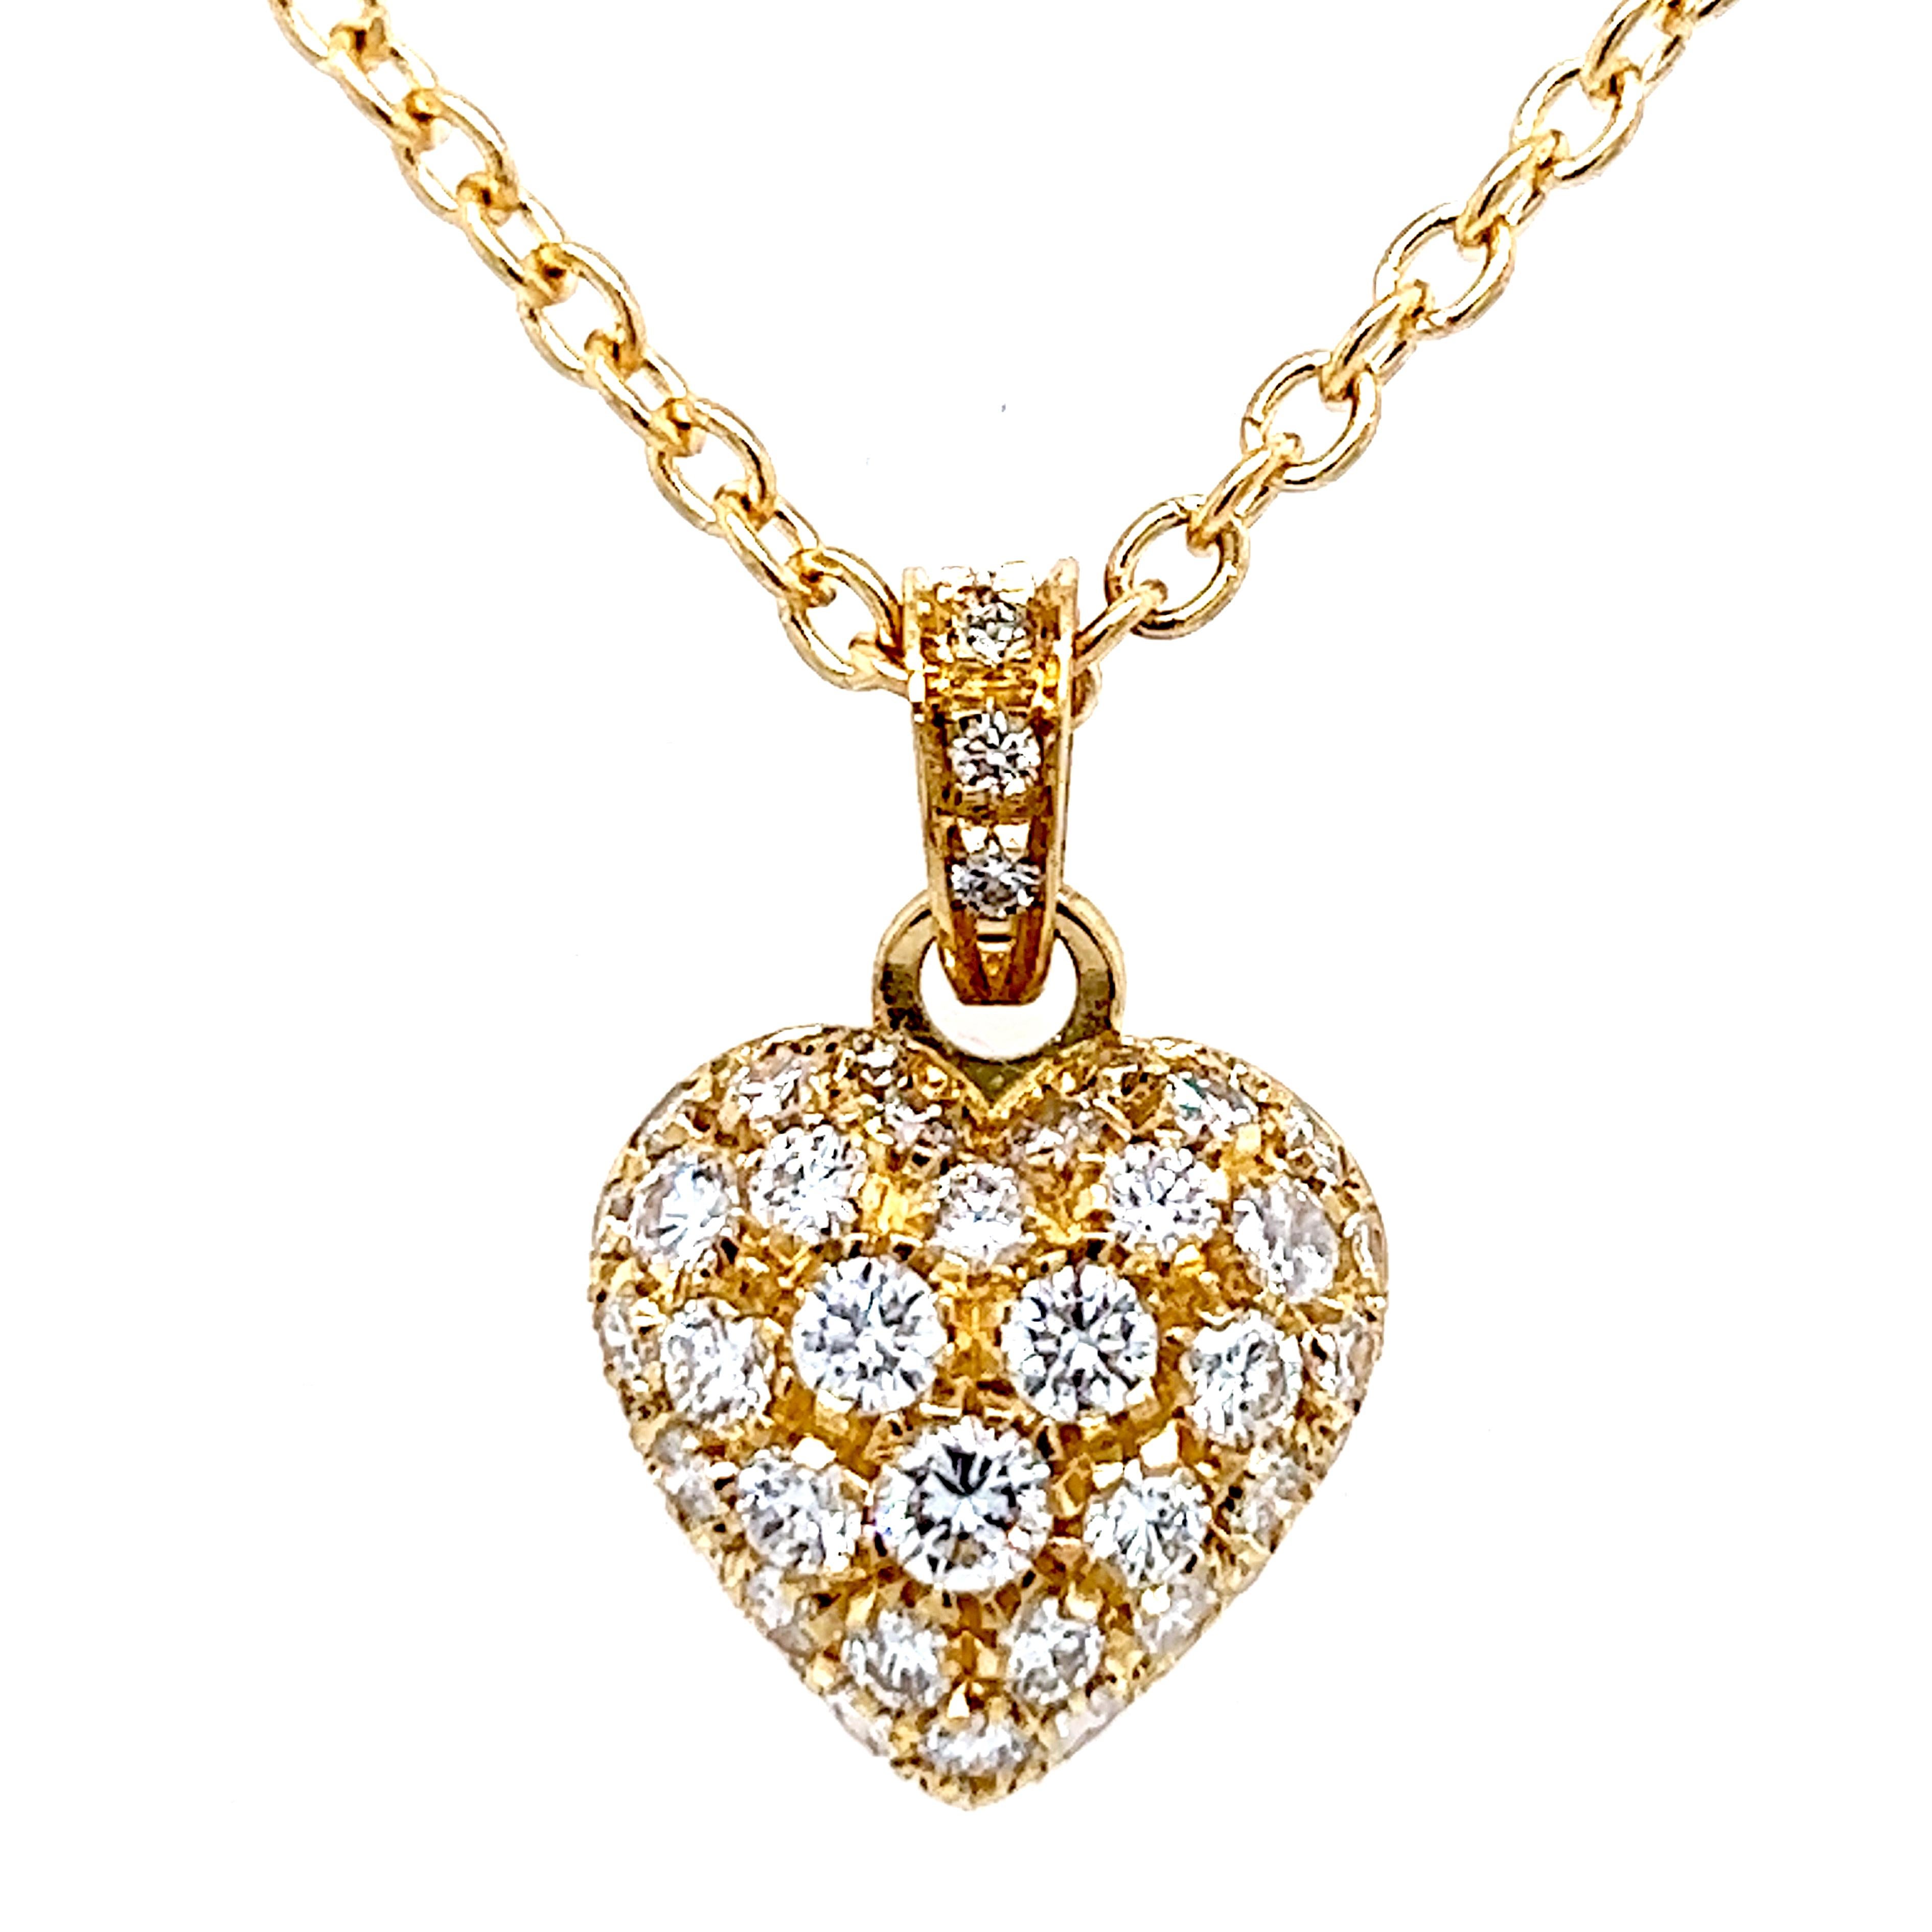 Contemporain Cartier, collier à pendentif cœur original en or jaune 18 carats et diamants blancs, 1990